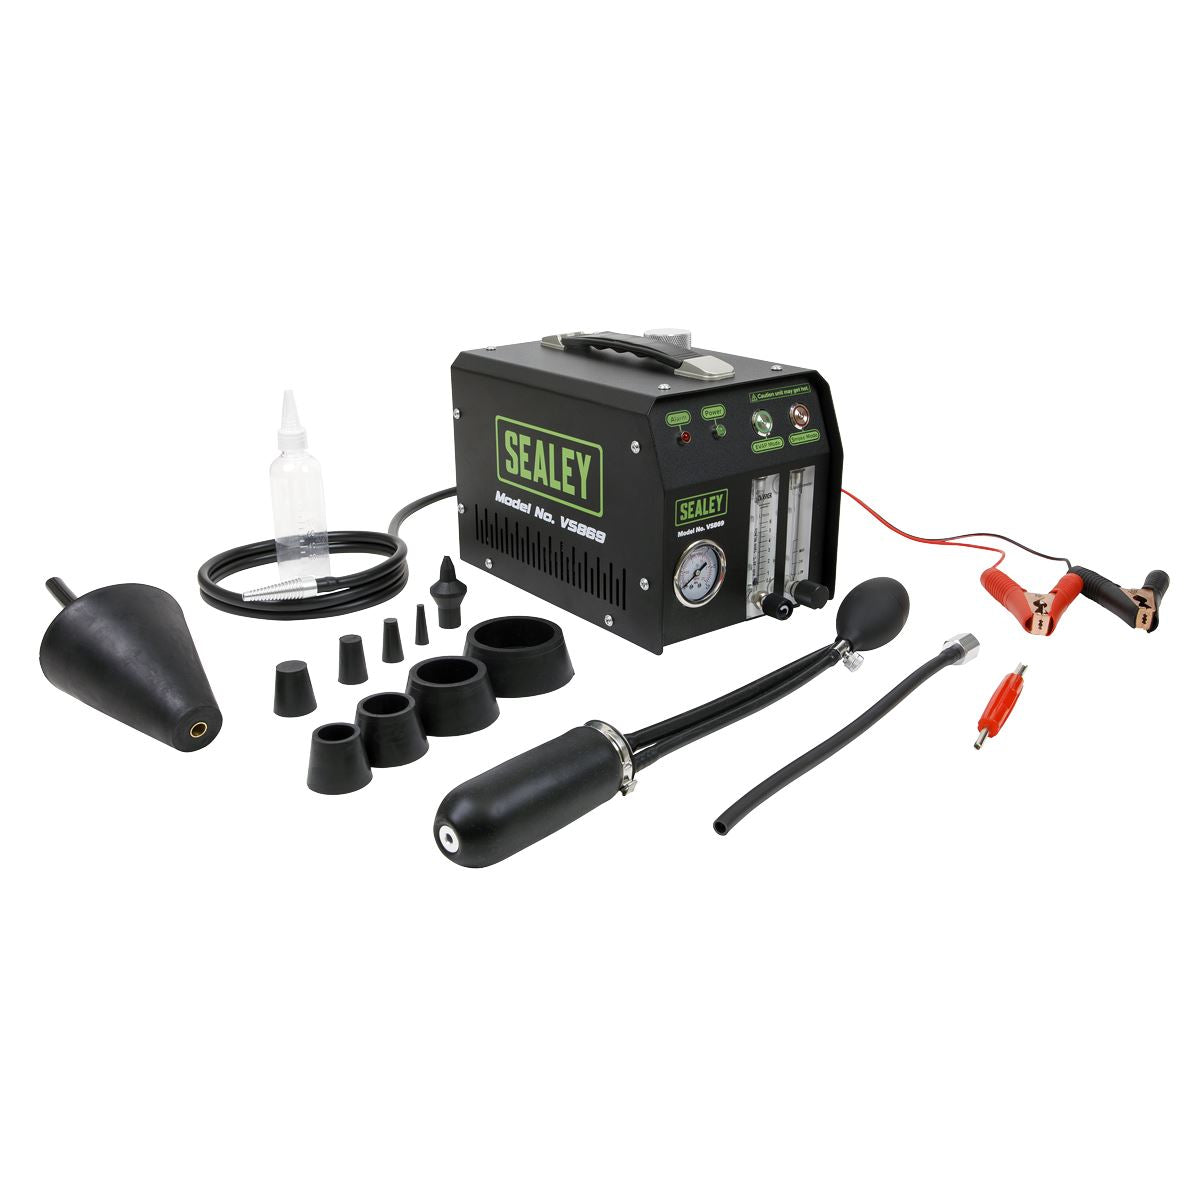 Sealey EVAP Tool Leak Detector Smoke Diagnostic VS869